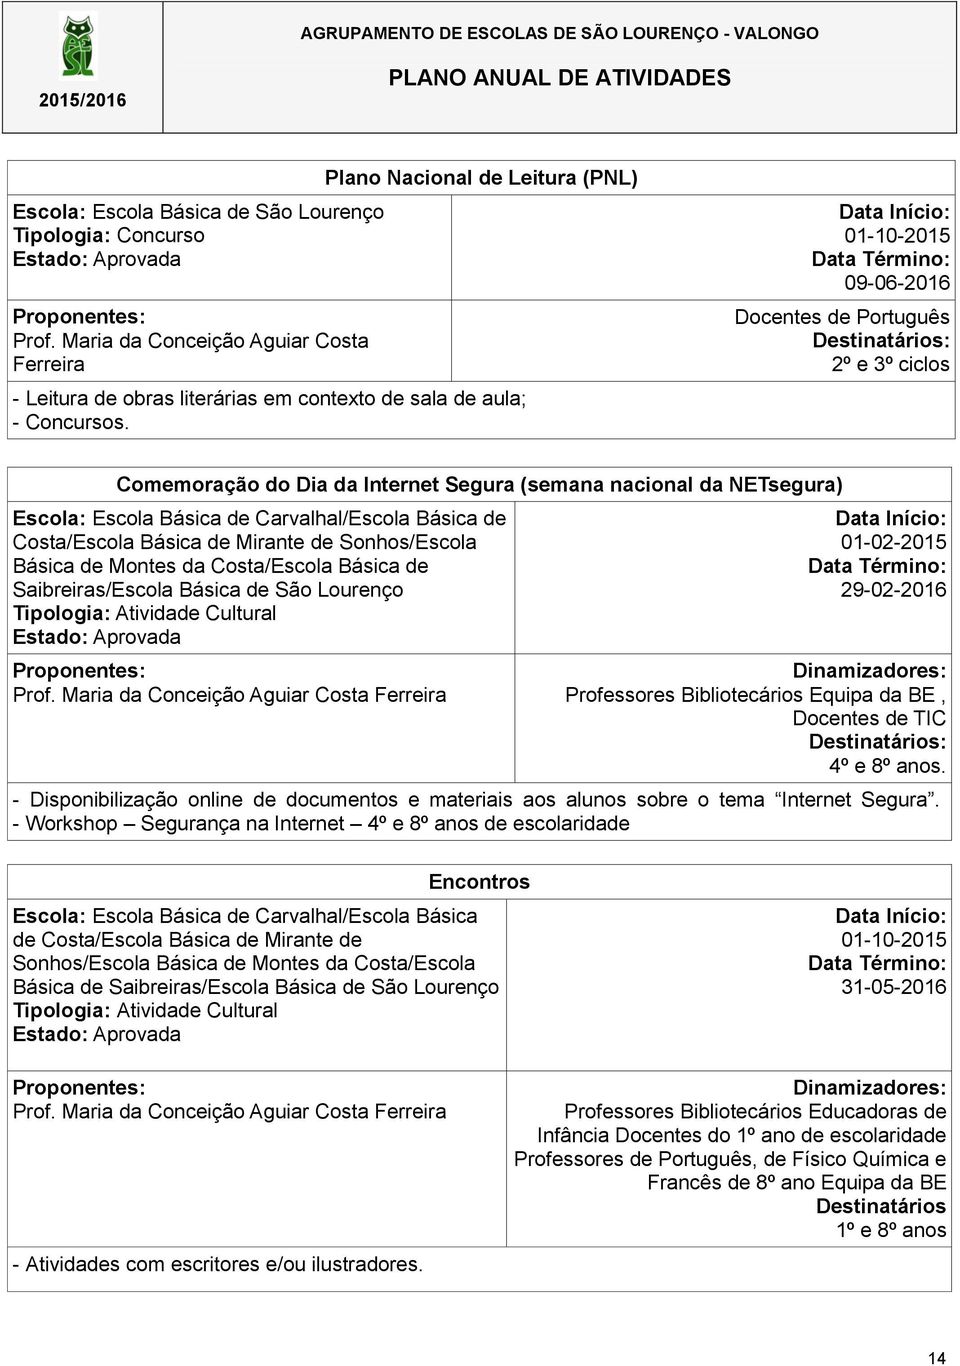 Saibreiras/Escola Básica de São Lourenço Prof. Maria da Conceição Aguiar Costa Ferreira 01-02-2015 29-02-2016 Professores Bibliotecários Equipa da BE, Docentes de TIC 4º e 8º anos.